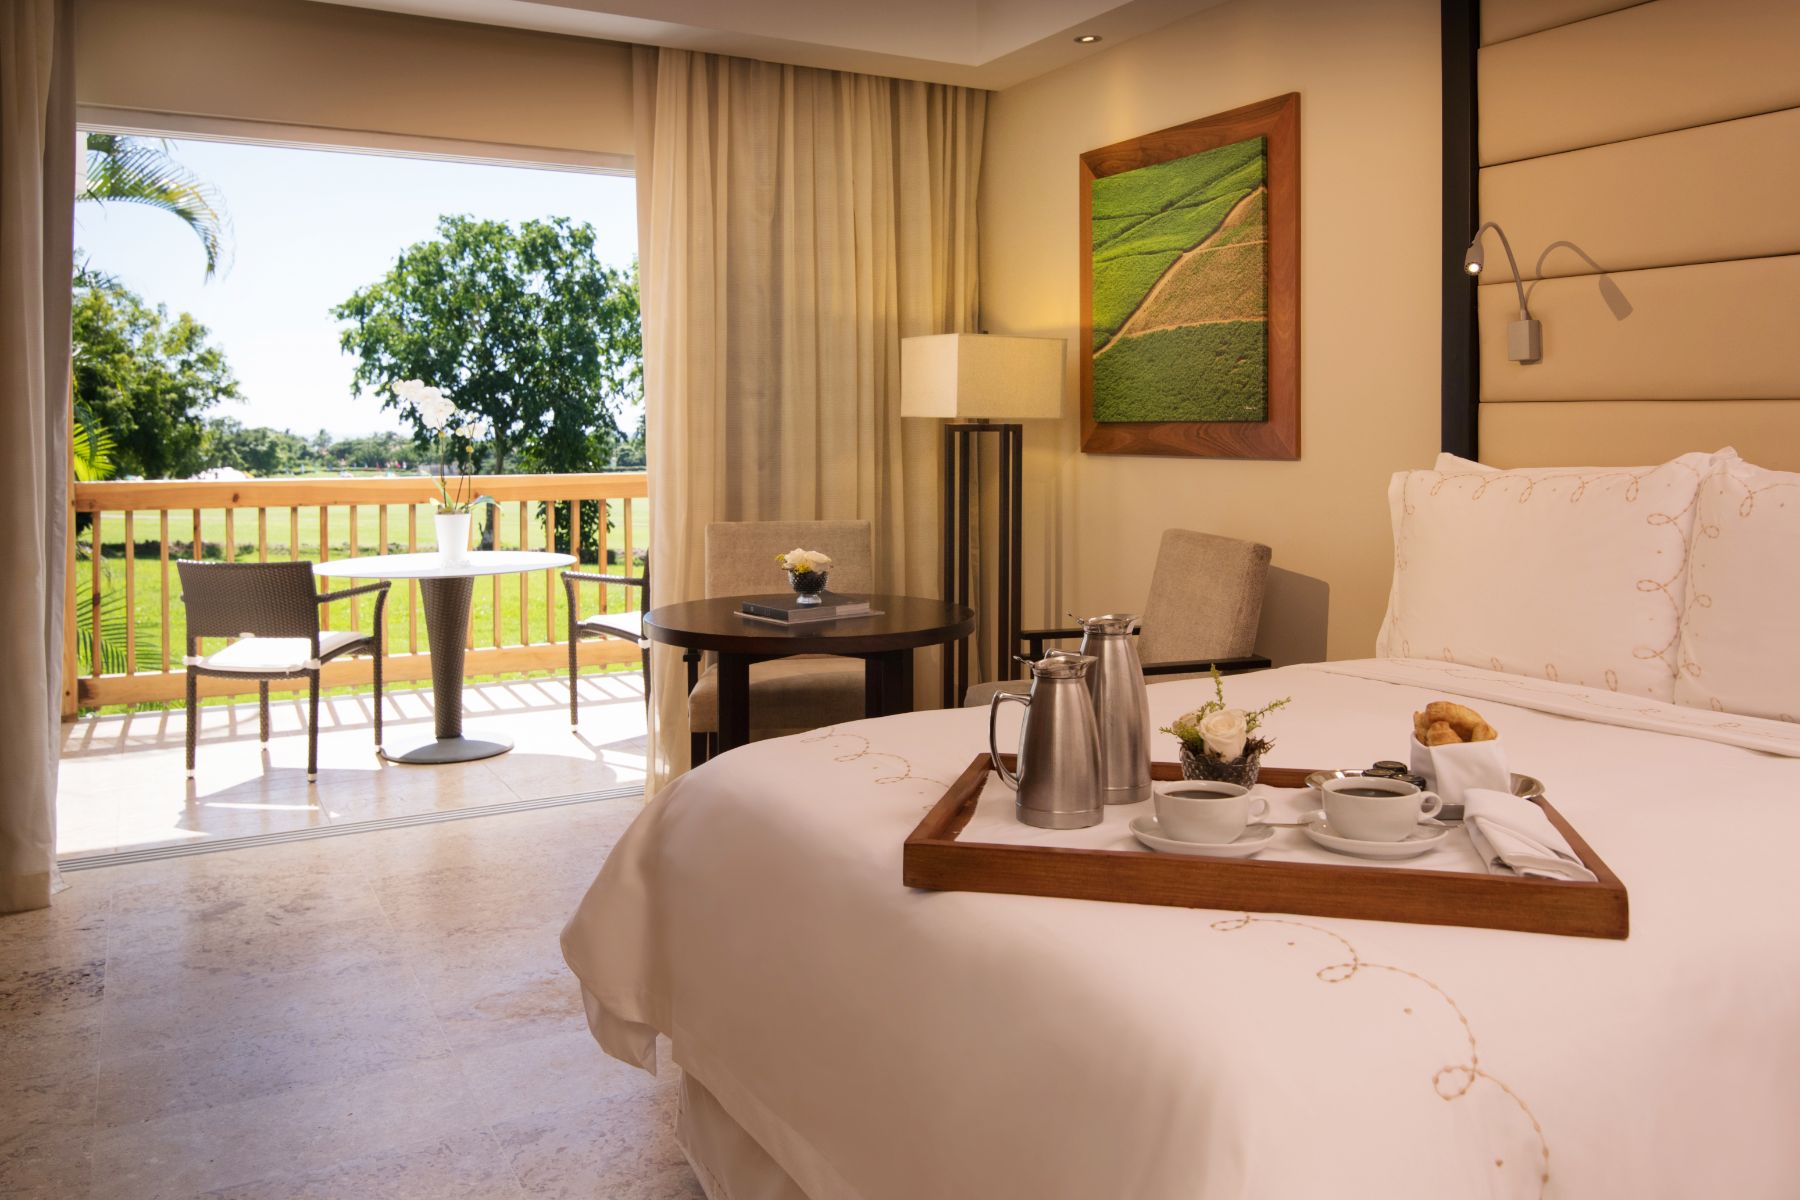 Elite Dominican Republic Resort Hotel Suite With Balcony at Casa de Campo Resort & Villas.